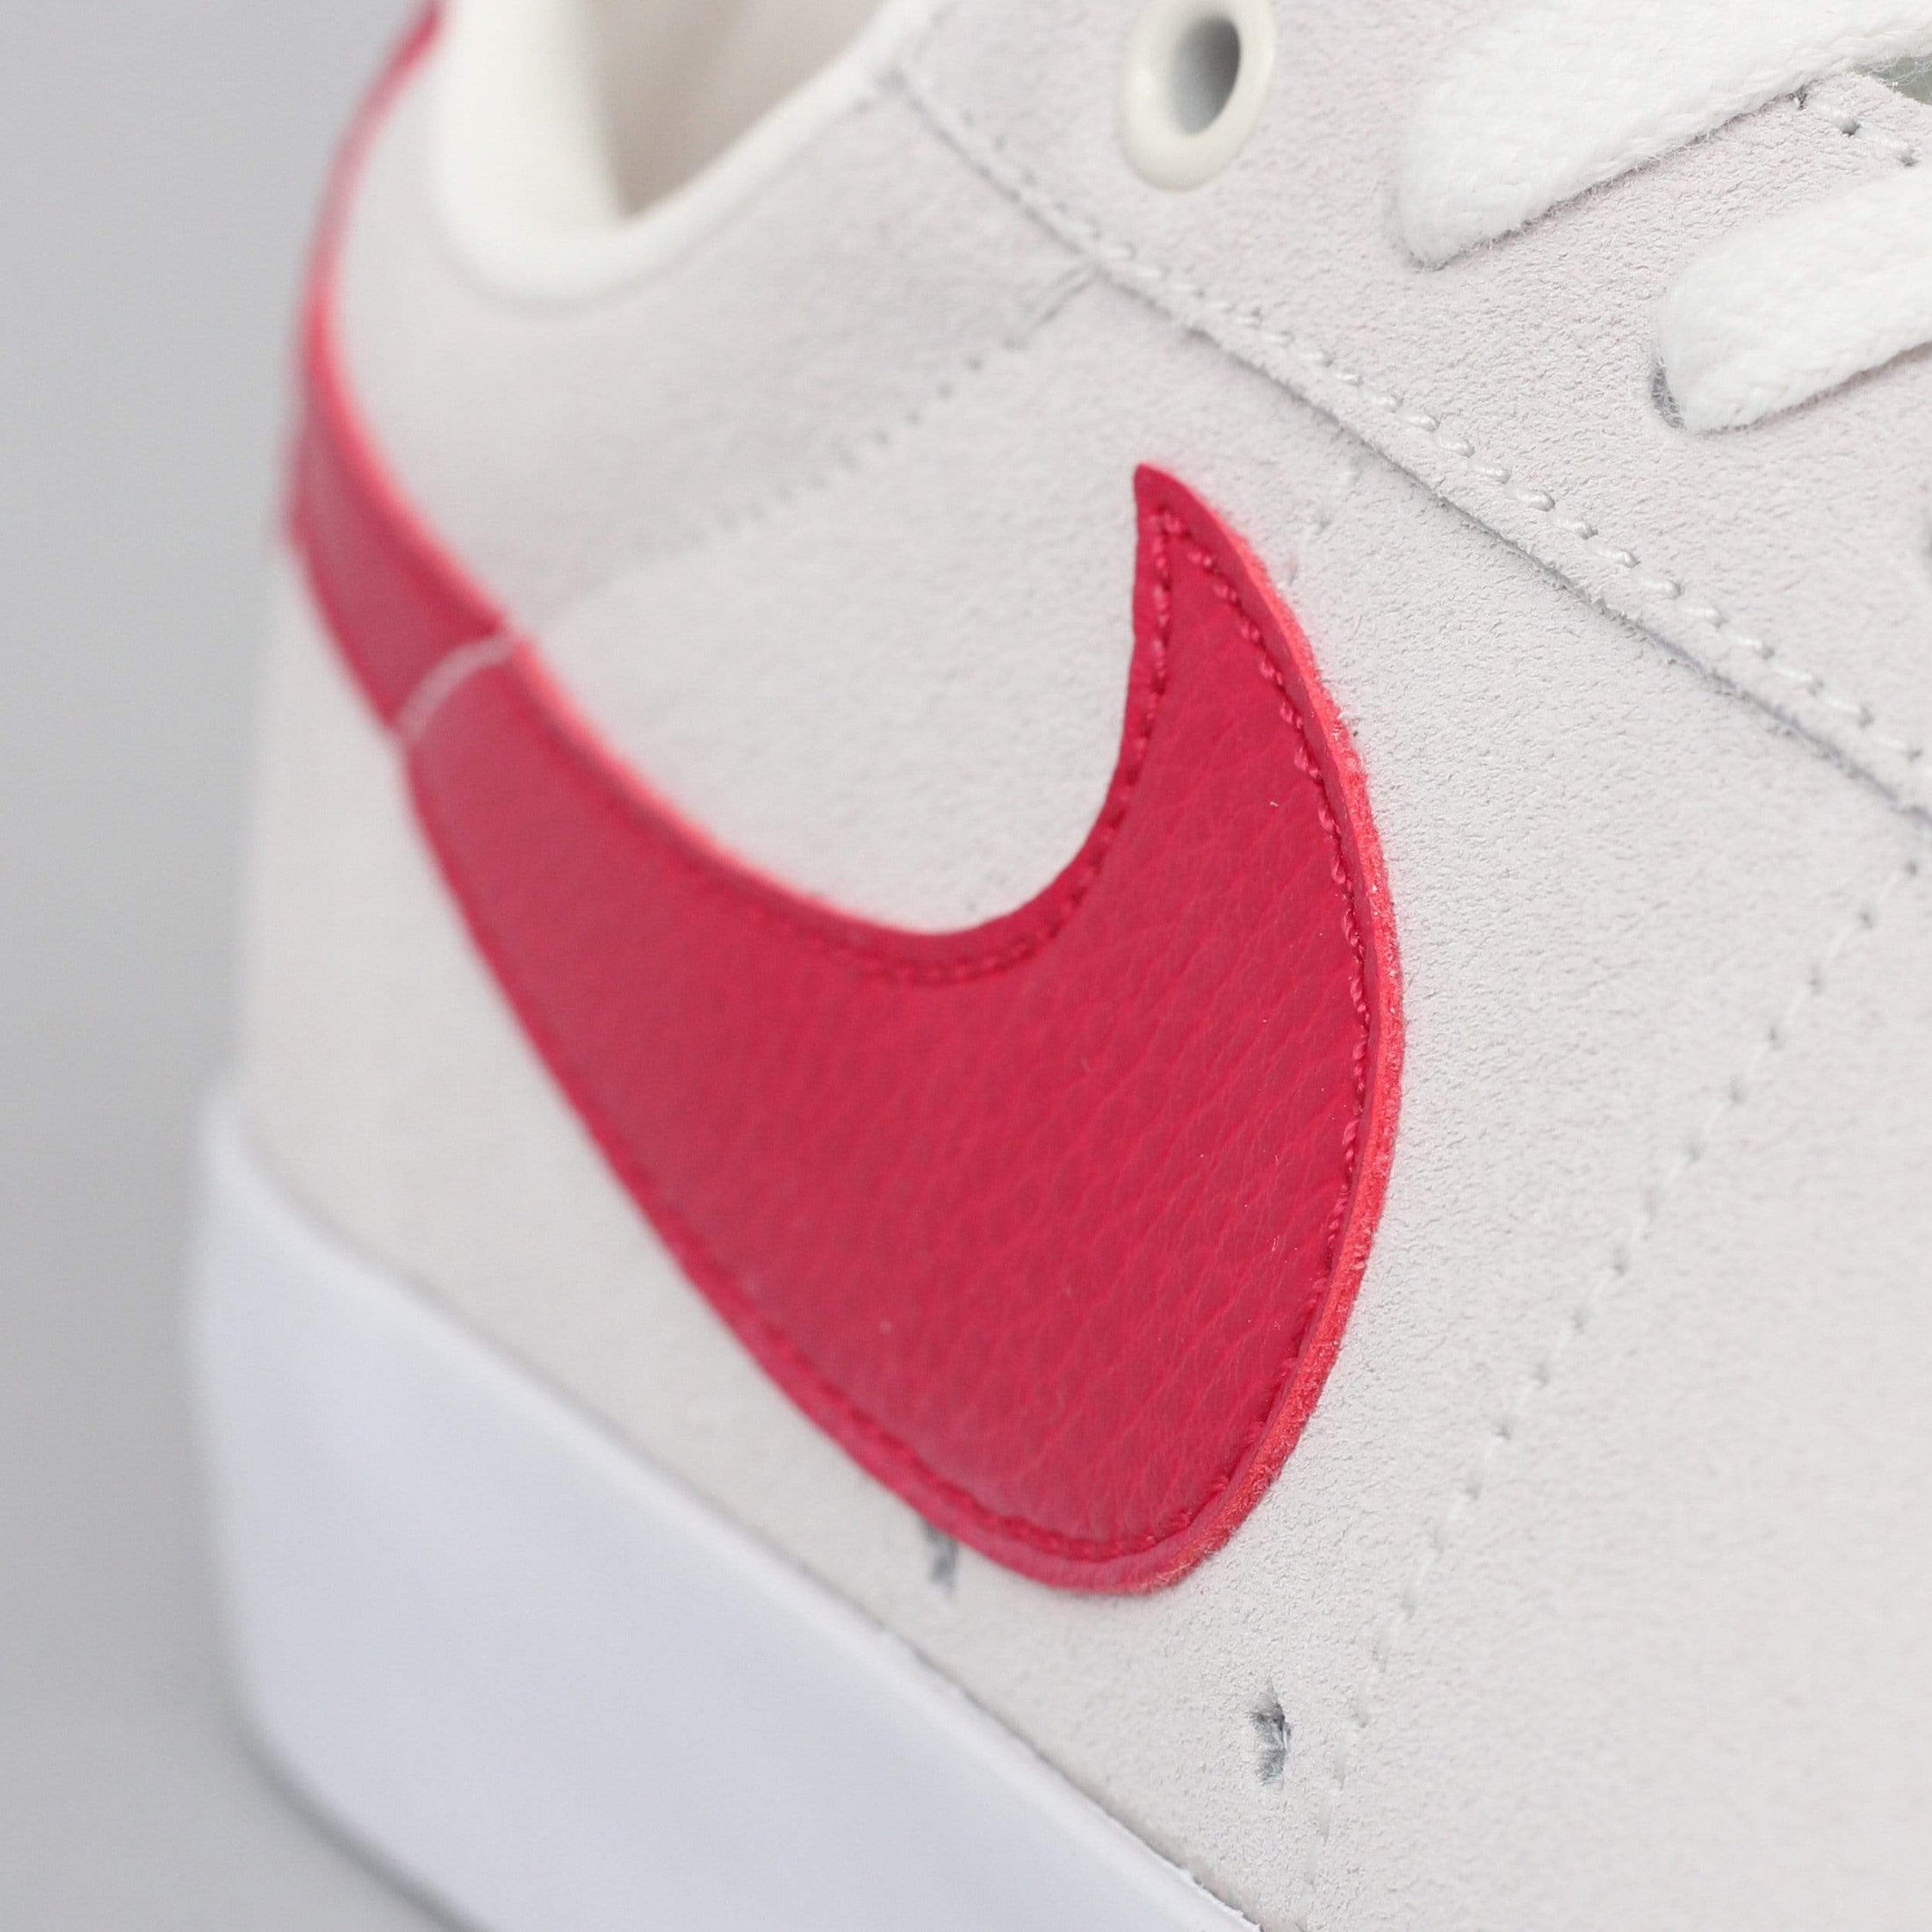 Nike SB Blazer Low GT Shoes Sail / Cardinal Red - White